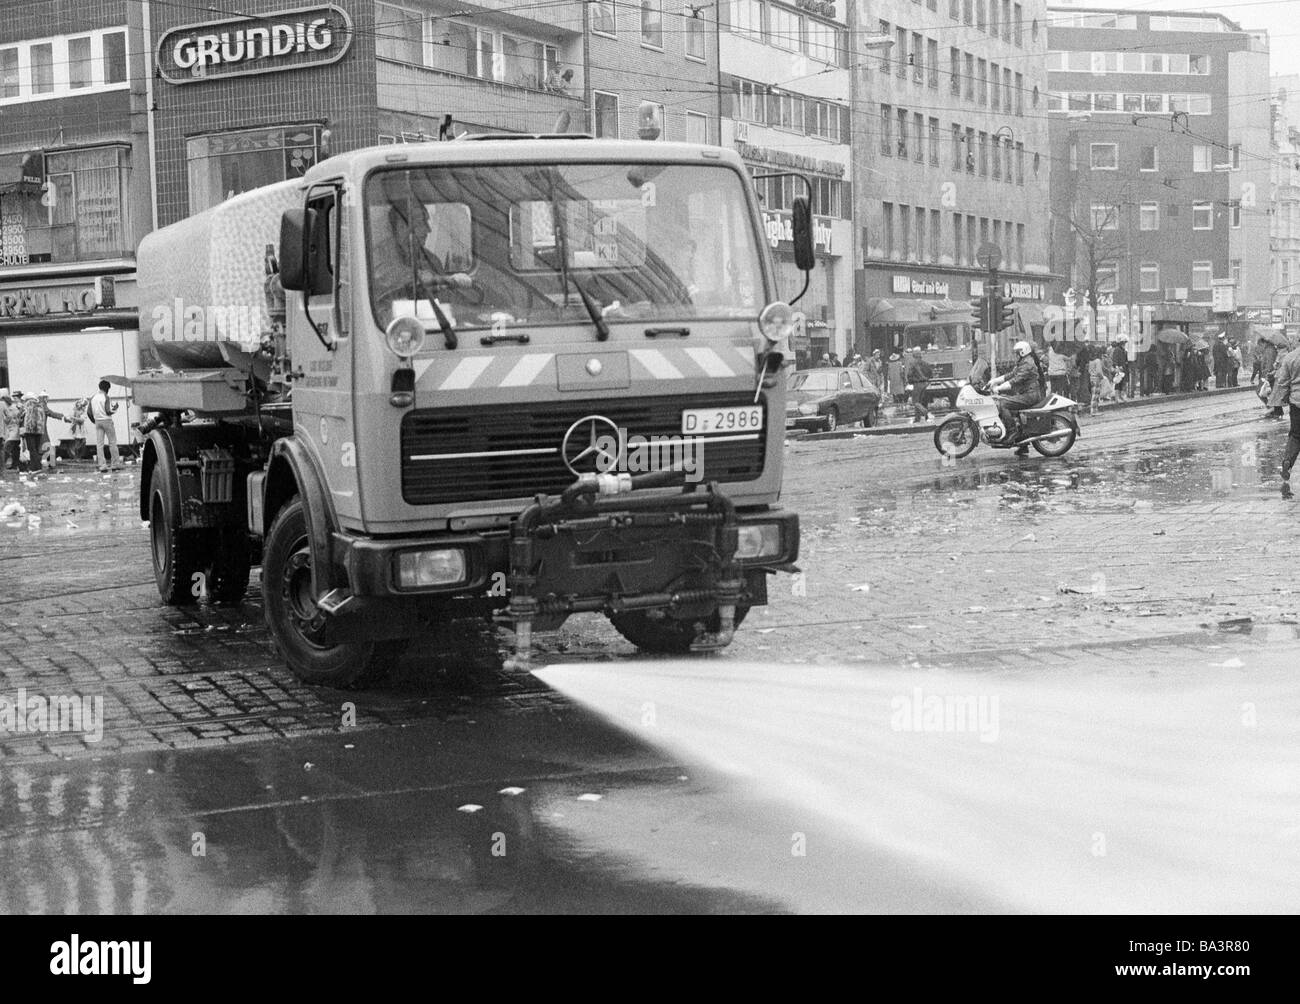 Ottanta, foto in bianco e nero, carnevale renano, lunedì di Rose Parade 1981, pulizia della strada dopo aver terminato la parata, spazzatrice stradale, D-Duesseldorf, Reno, Renania settentrionale-Vestfalia Foto Stock